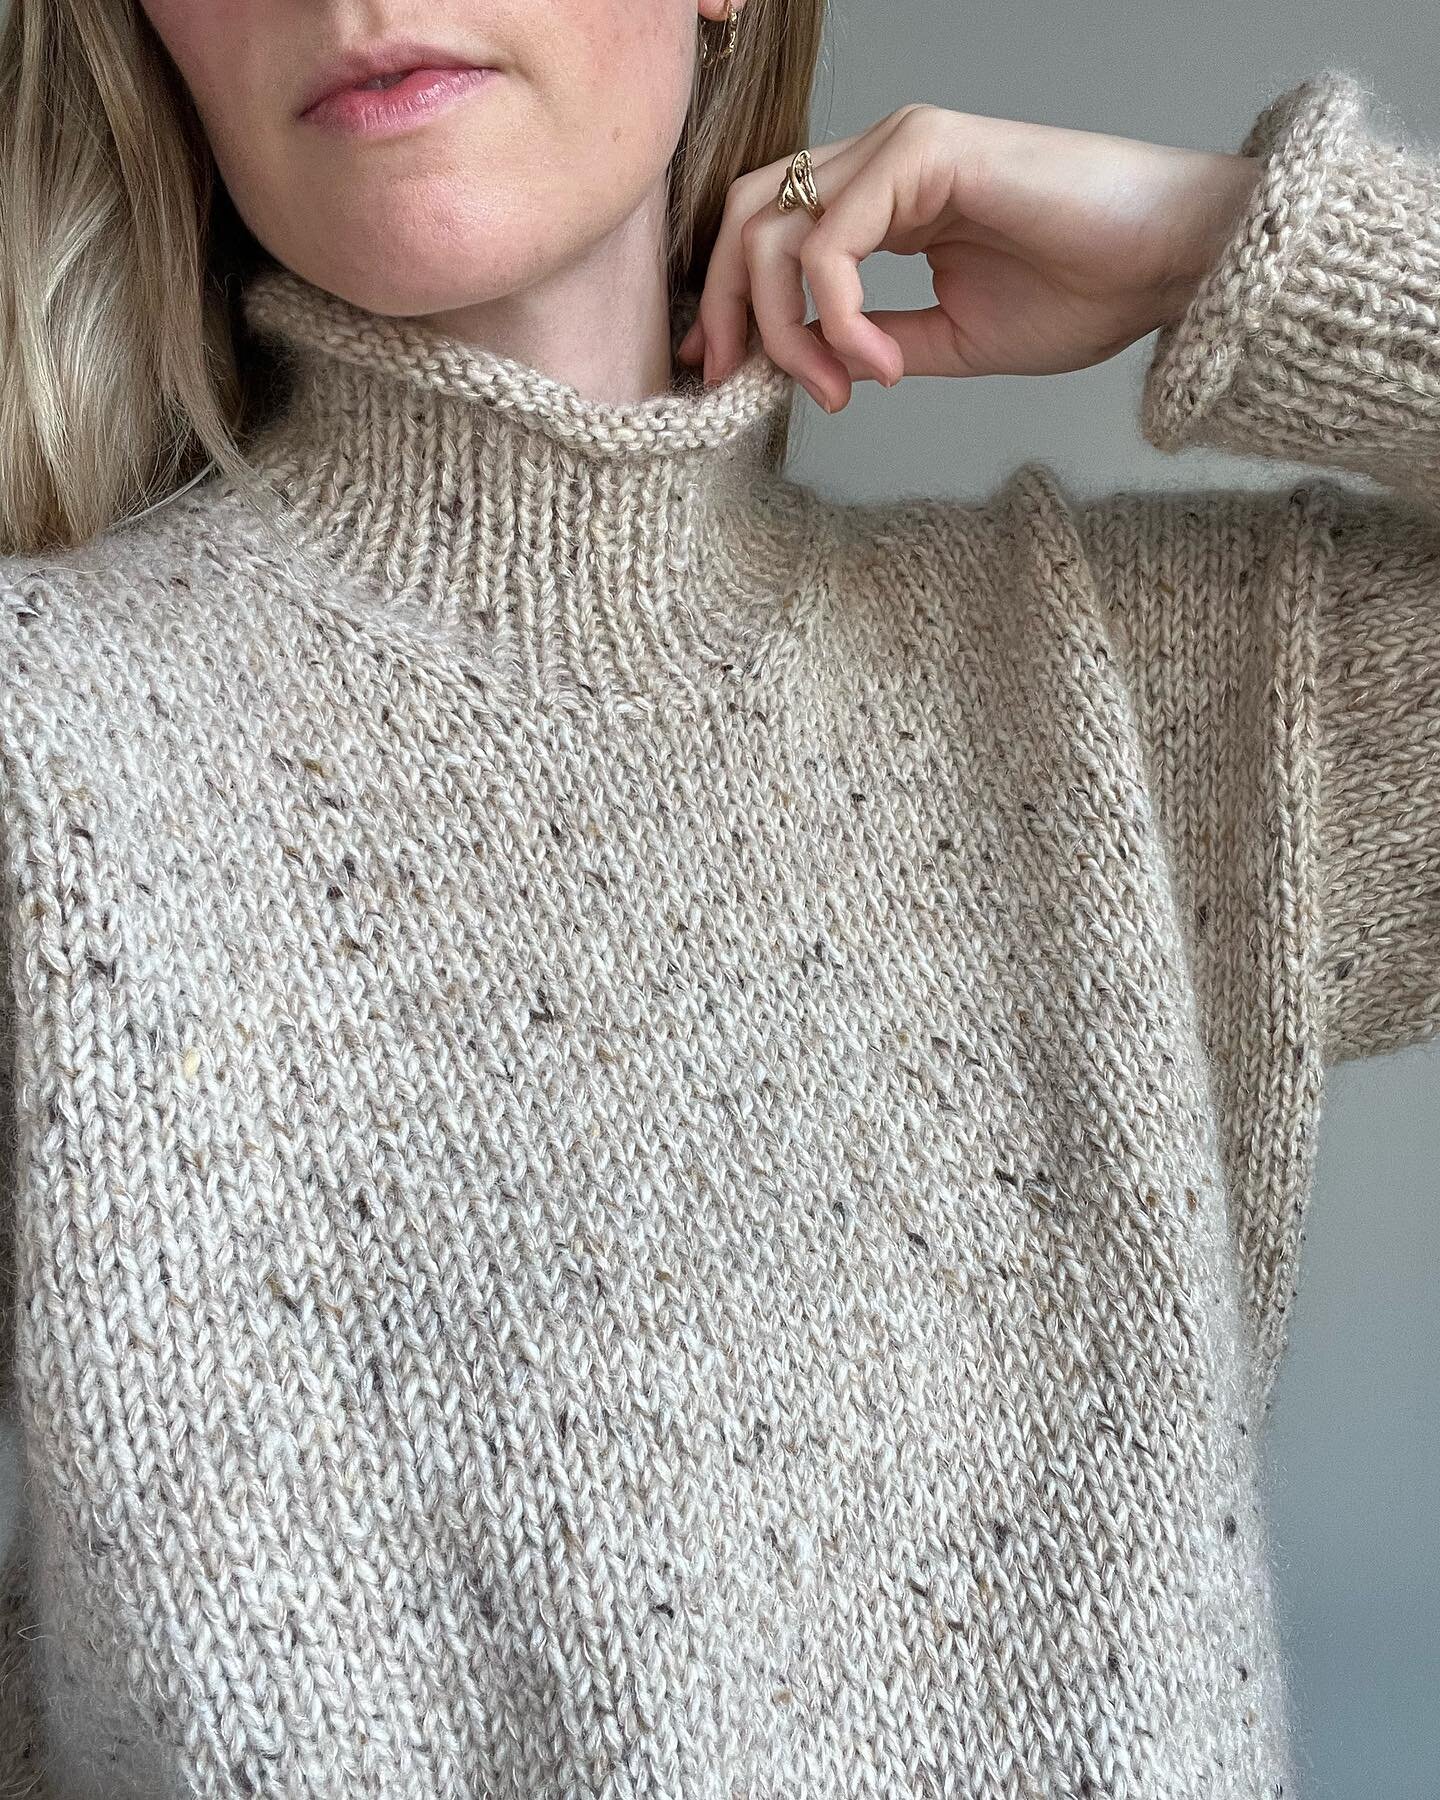 Helle Sweater 🤍
Oppskrift p&aring; norsk, dansk, svensk, engelsk, tysk og fransk finner du p&aring; www.strikkekaffe.com, Ravelry og i @knitapp 🌾

#hellesweater #strikkekaffe